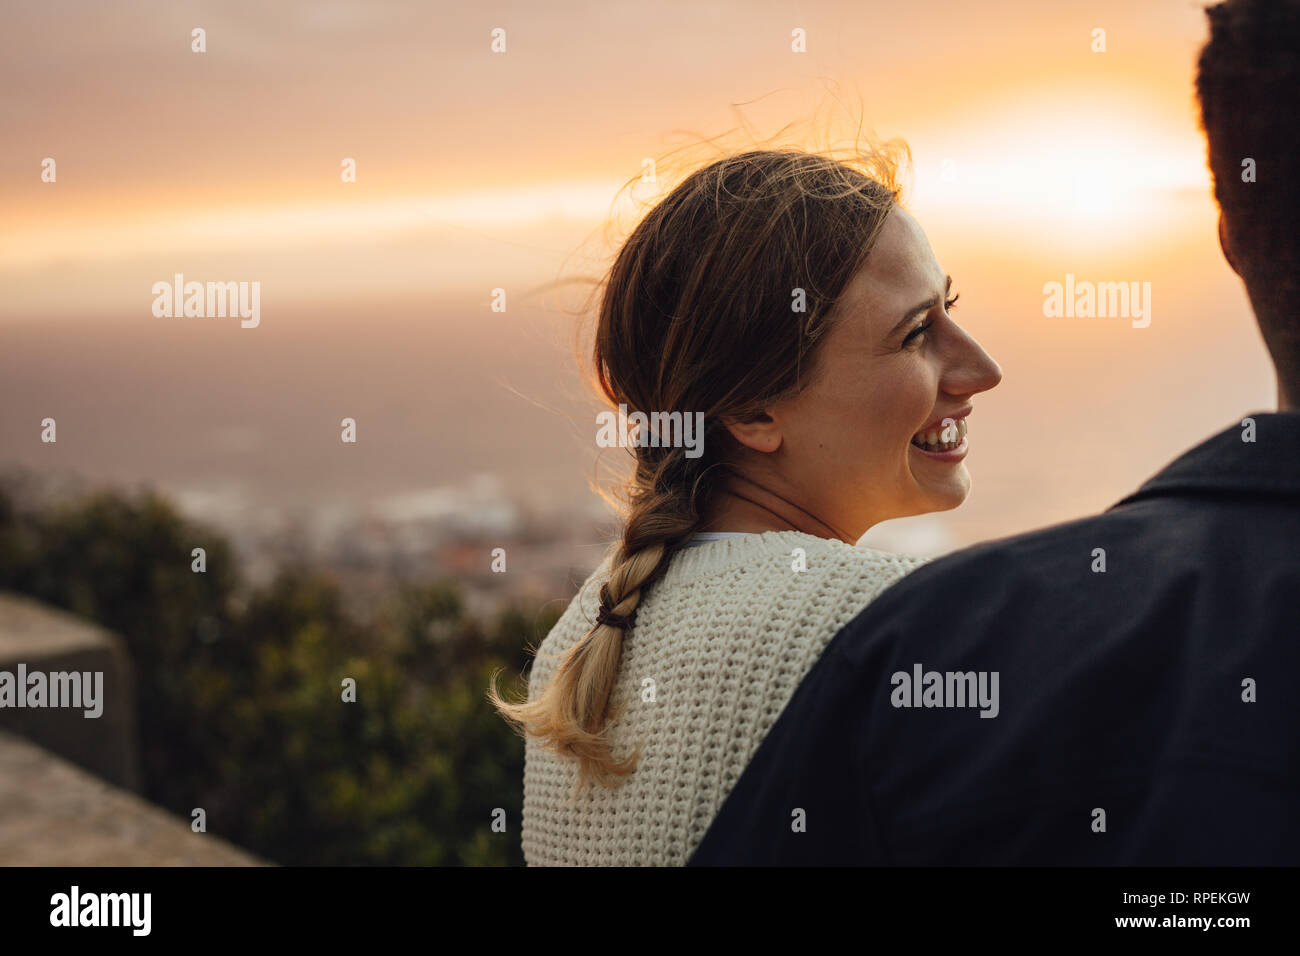 Cheerful young woman sitting avec son petit ami à l'extérieur. Femme à la recherche de son homme et souriant contre le coucher du soleil. Banque D'Images